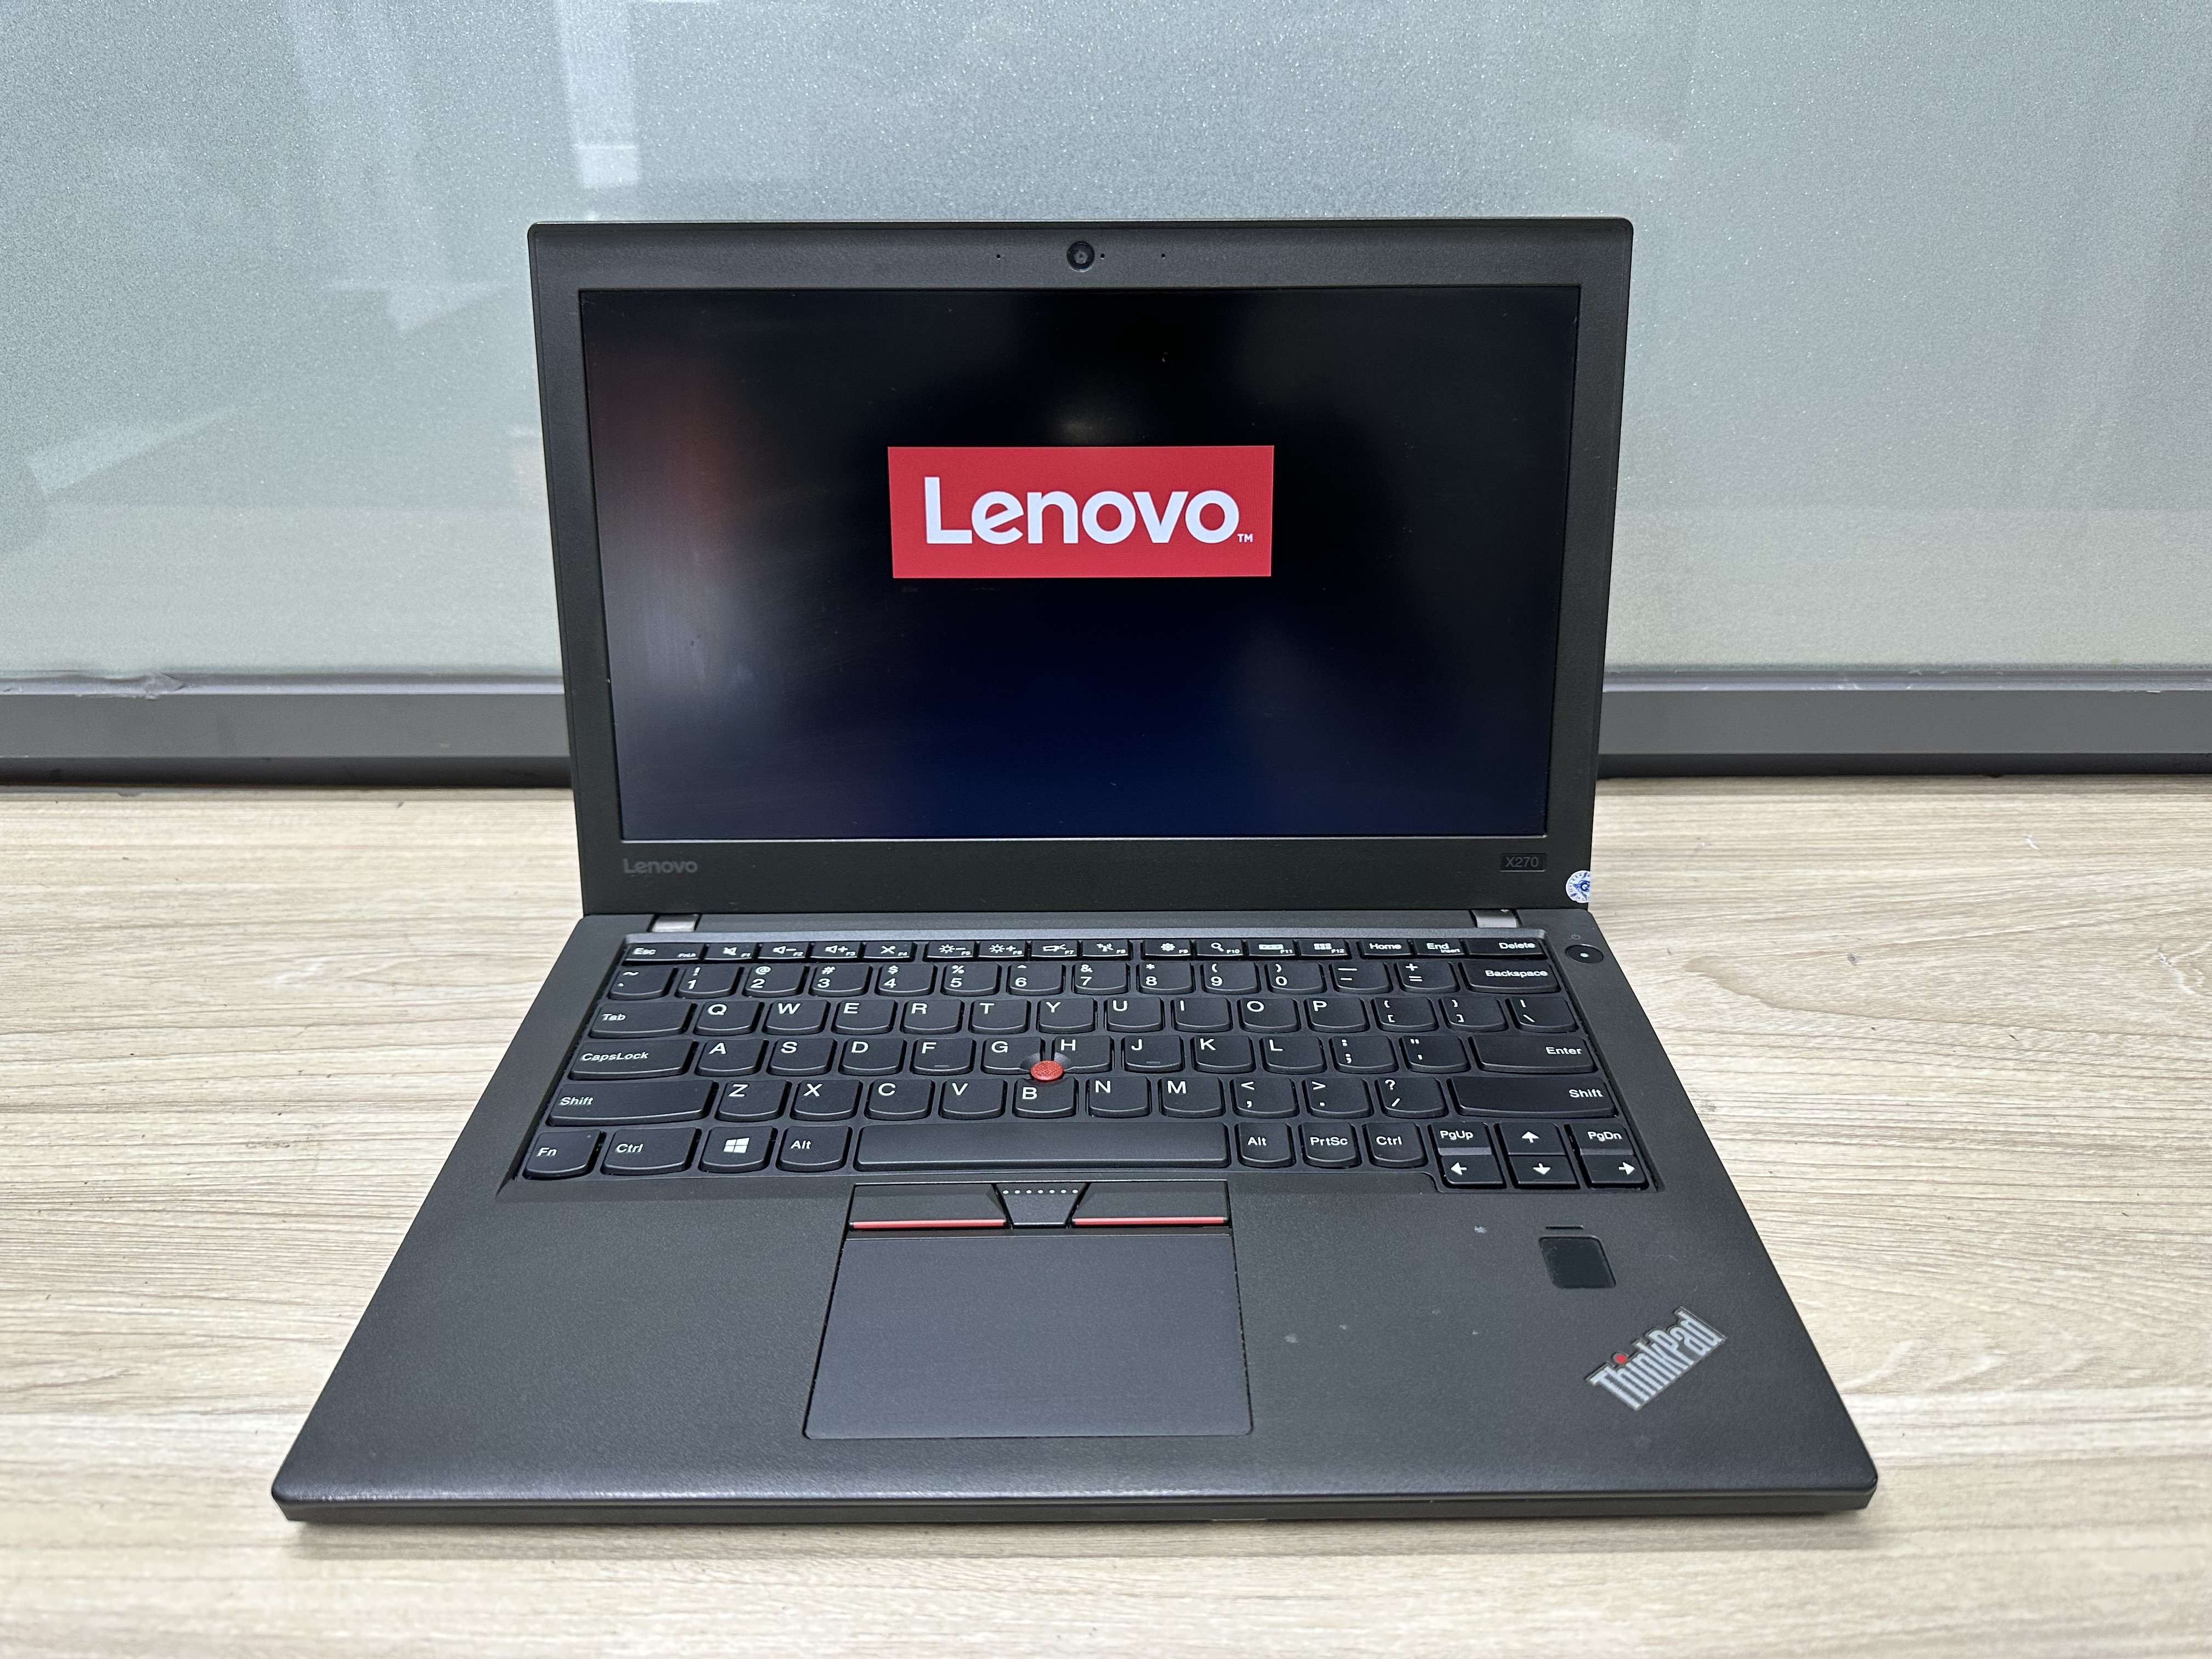 Laptop cũ văn phòng học tập Lenovo Thinkpad X270 Touch I5 6300U mạnh mẽ nhỏ gọn và bền bỉ